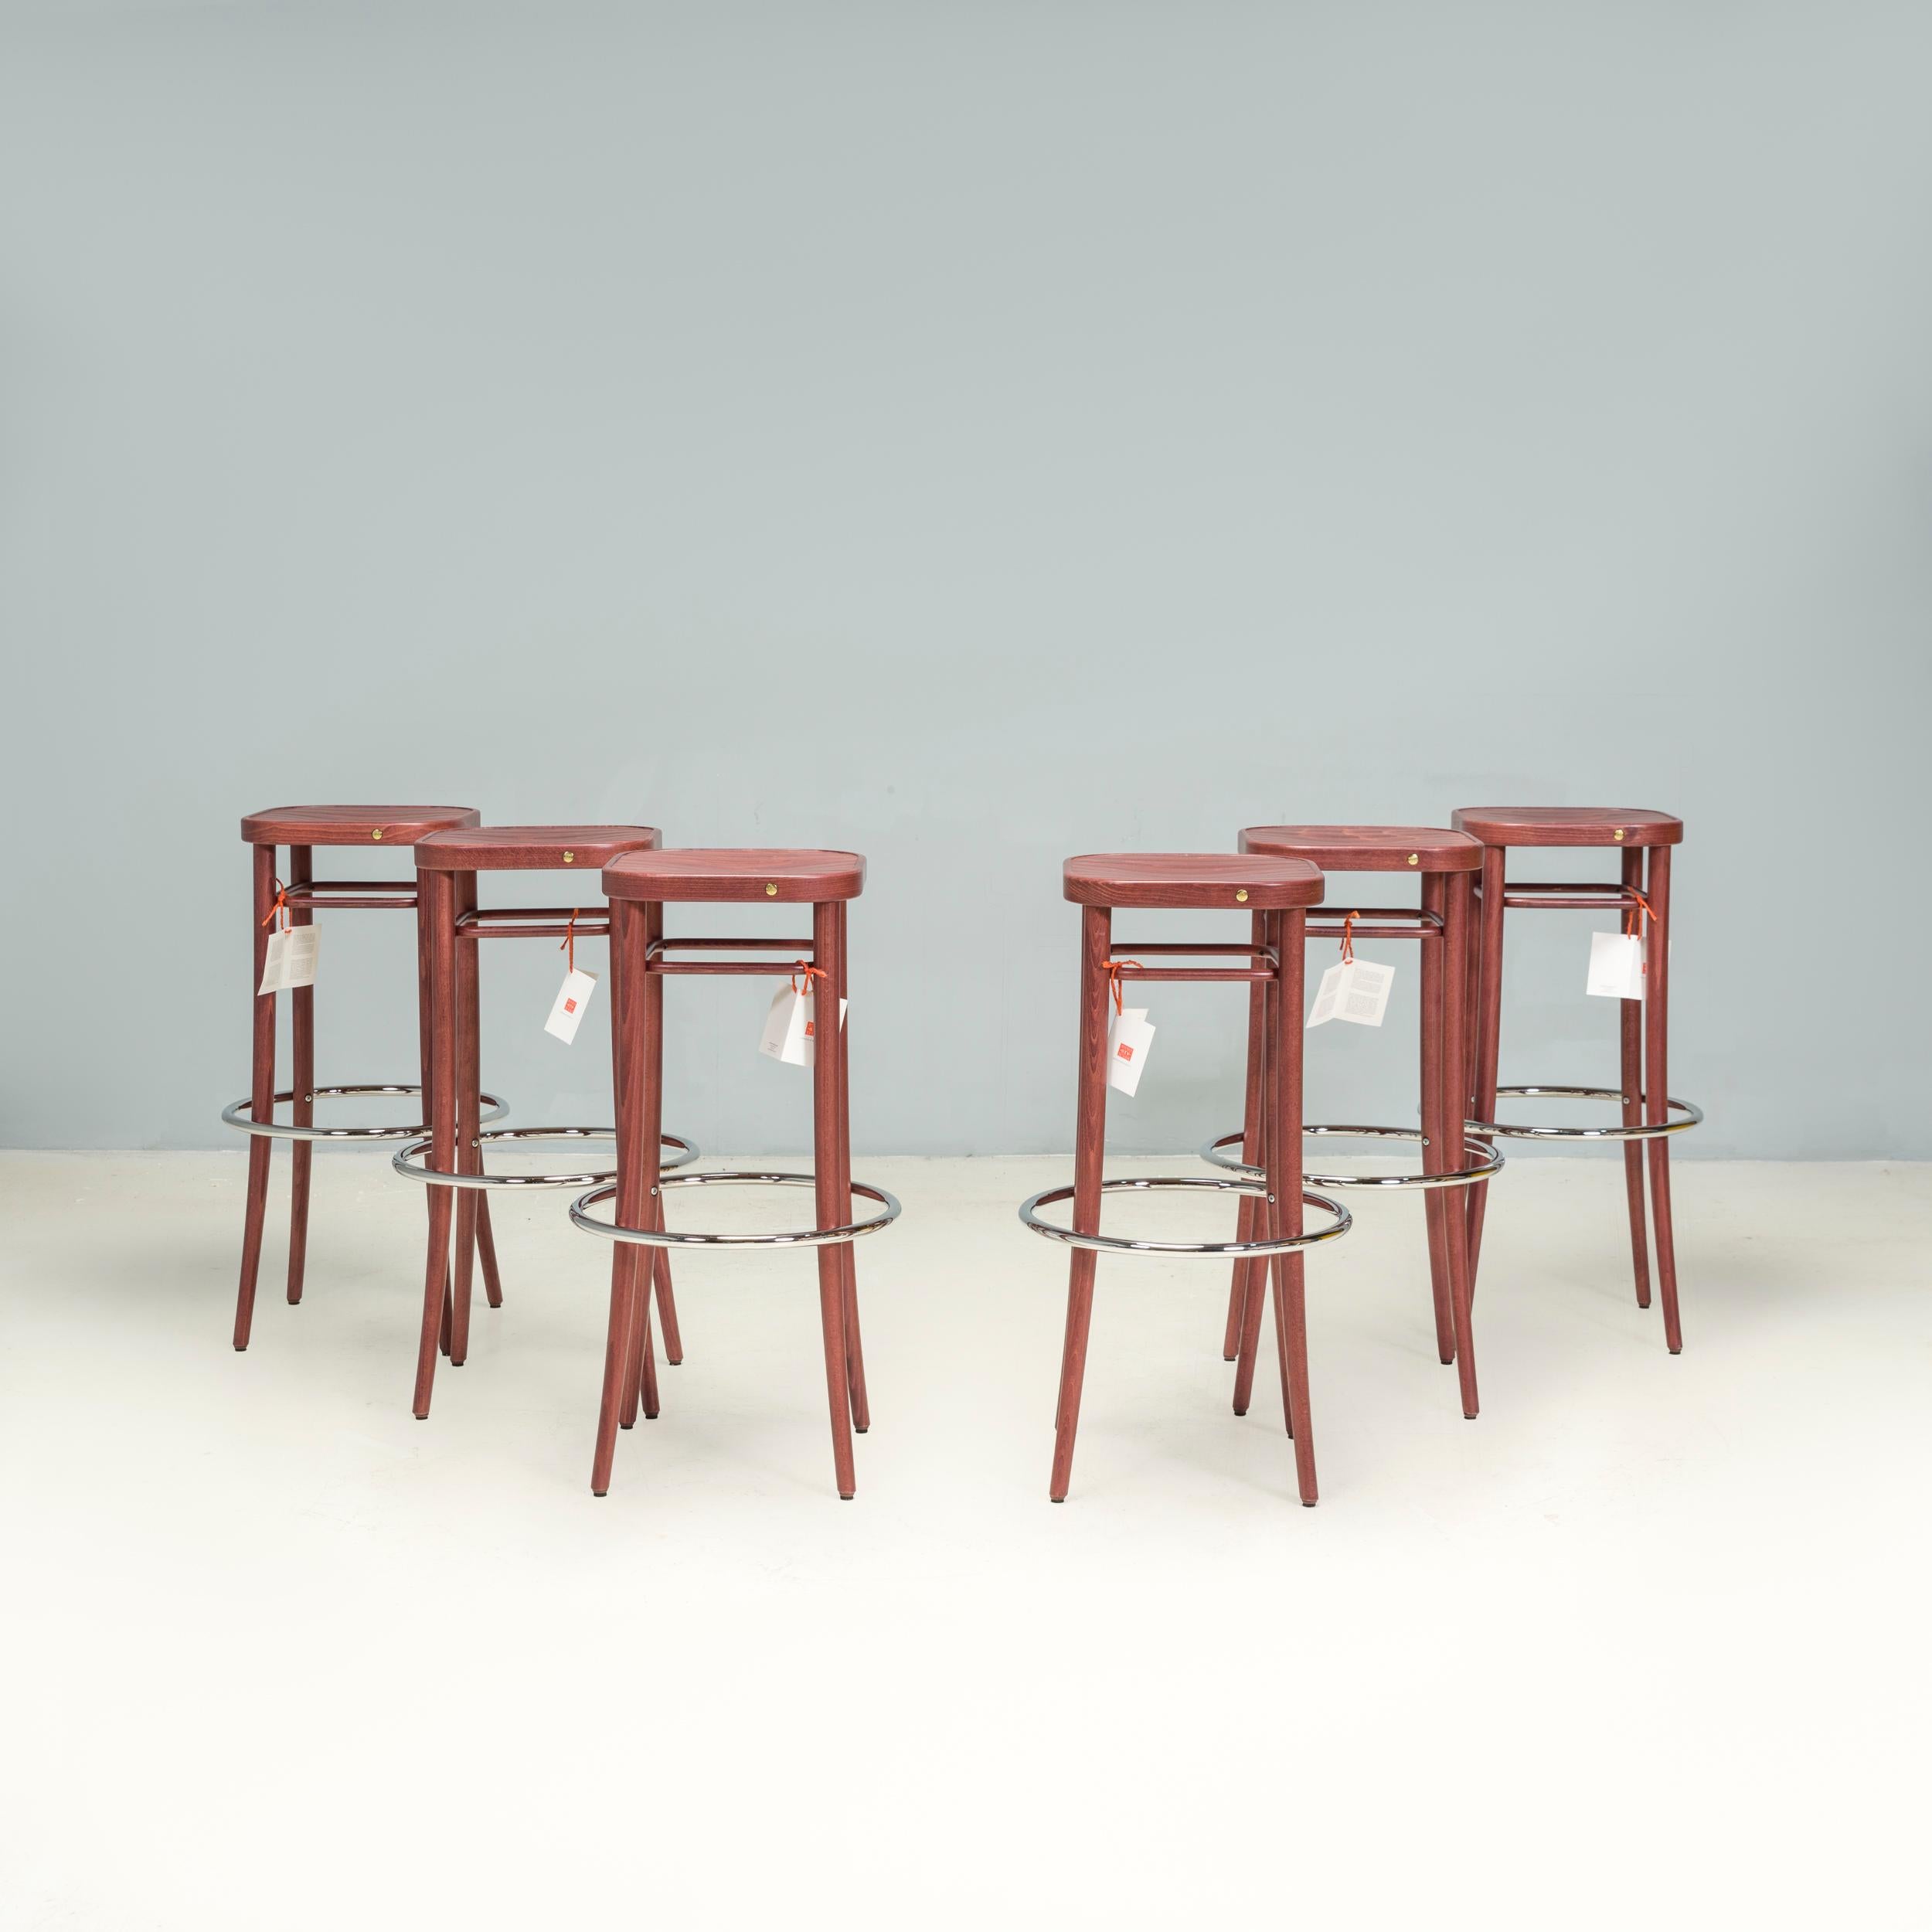 Conçu à l'origine en 1908 par August Thonet, le tabouret Barhocker utilise les mêmes techniques que les emblématiques chaises en bois courbé de la même époque.

Fabriqué par Gebrüder Thonet Vienna en 2015, cet ensemble de six.  Les tabourets sont